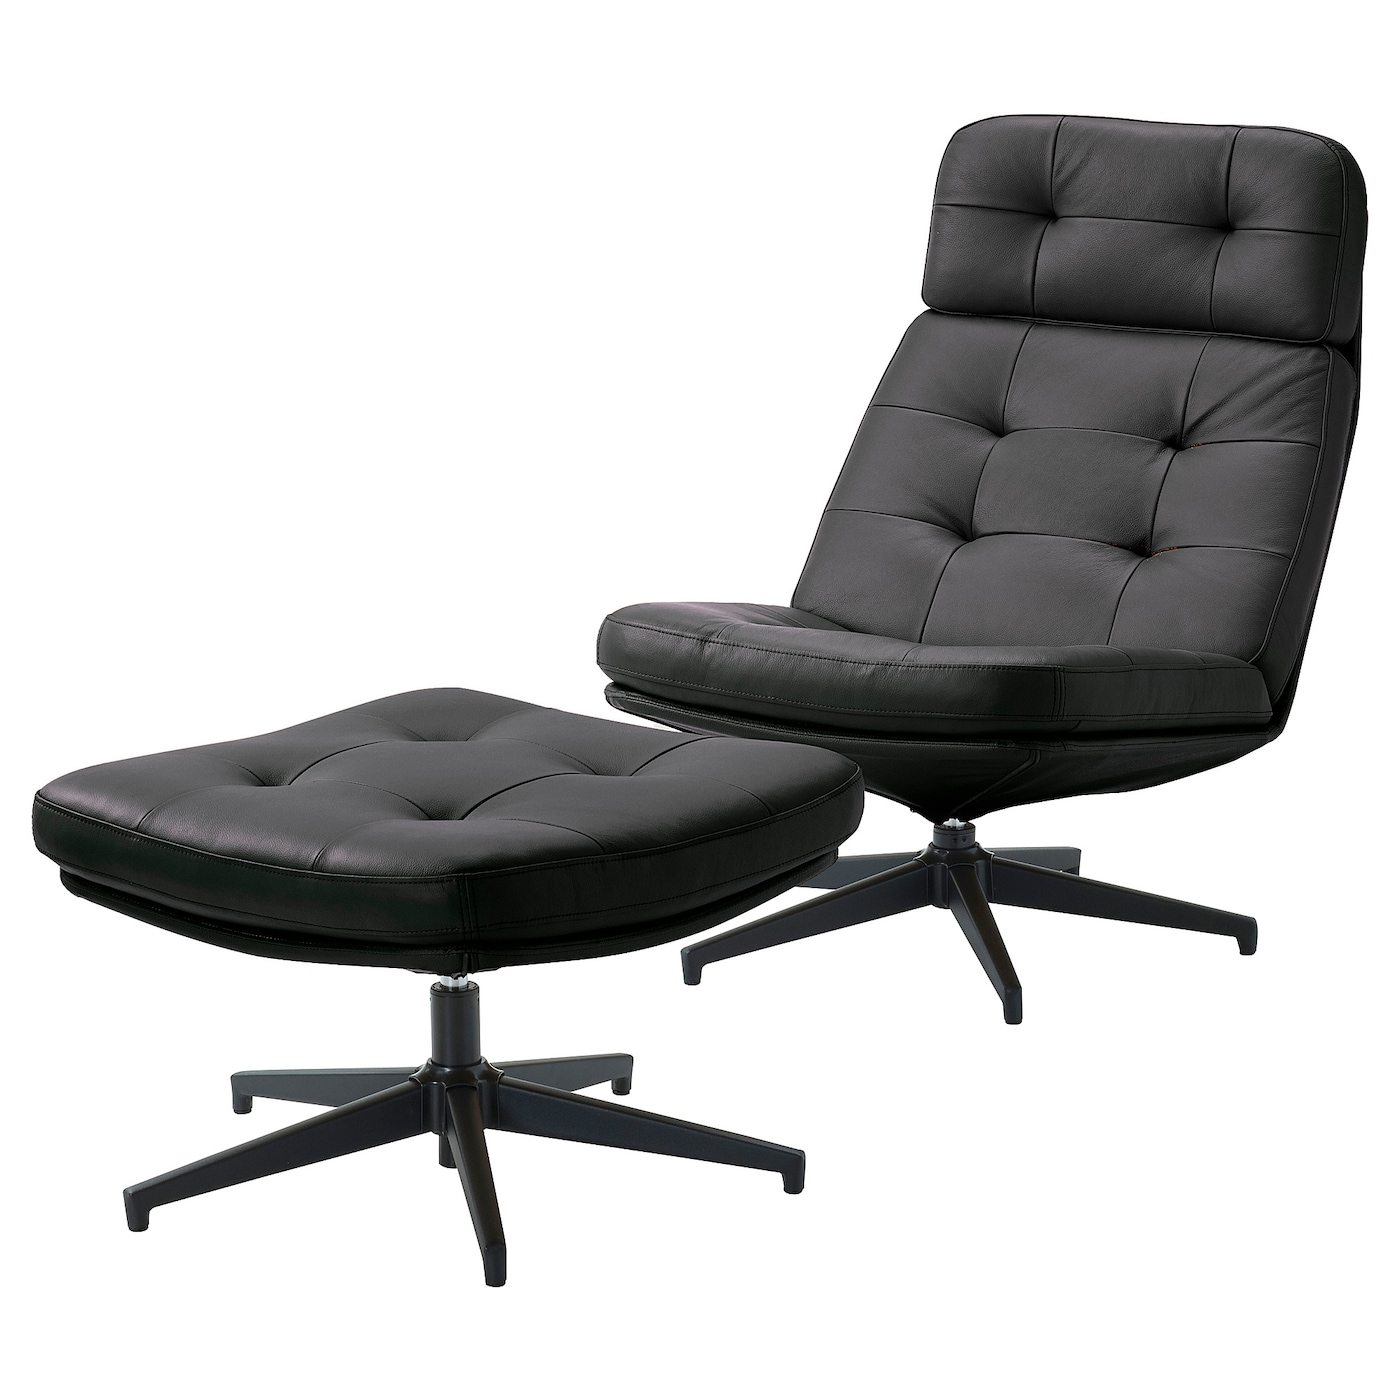 ХАВБЕРГ Кресло и подставка для ног, Гранн/Бомстад черный HAVBERG IKEA дизайнерское эргономичное кресло расслабляющая подставка для ног вращающееся компьютерное кресло для геймеров откидное кожаное кресло